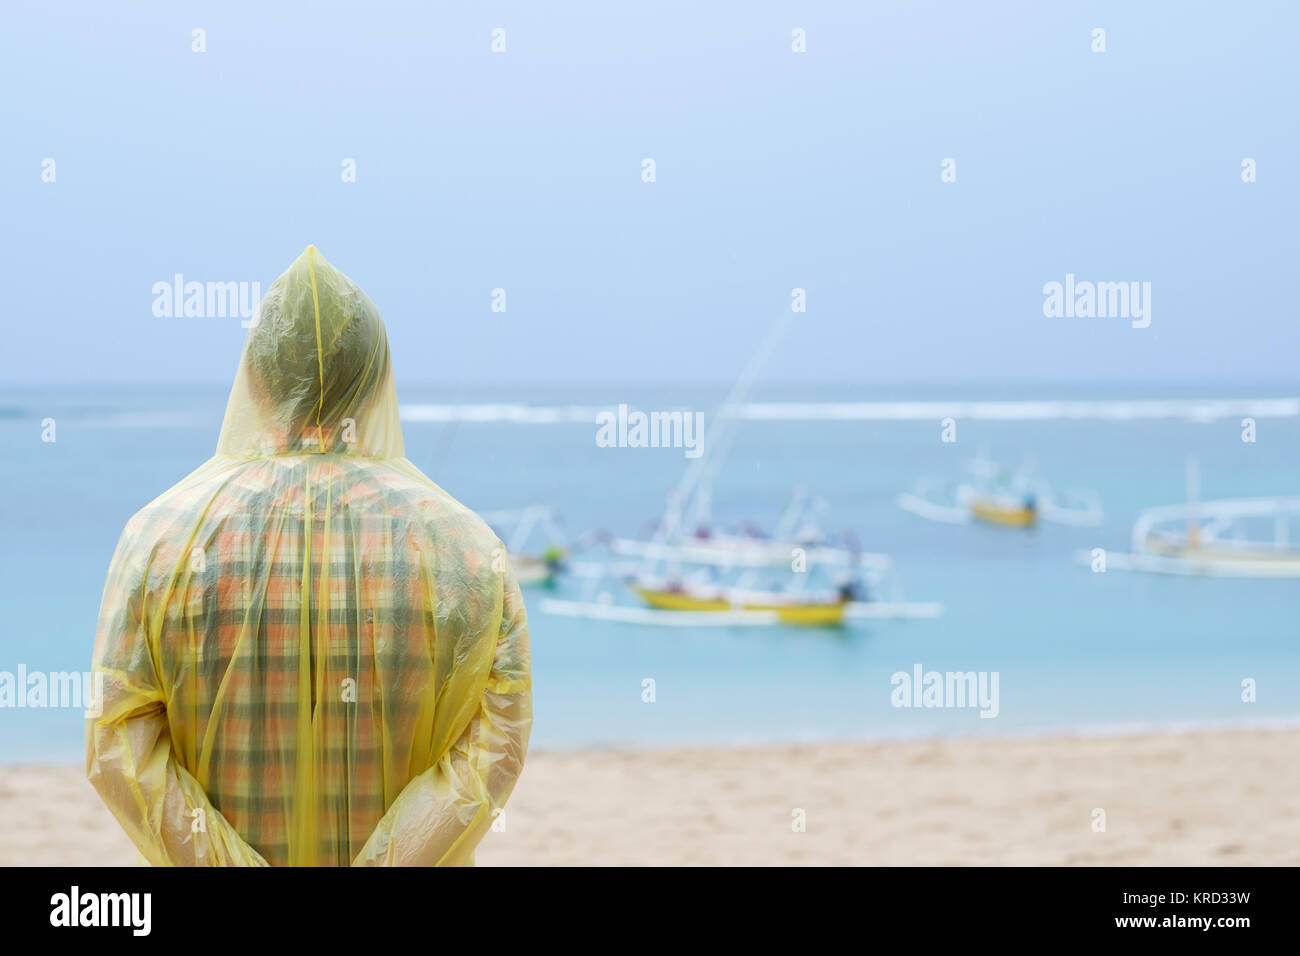 Uomo in un impermeabile giallo sulla riva del mare tropicale durante la pioggia. Egli sta pensando a qualcosa in solitudine Foto Stock